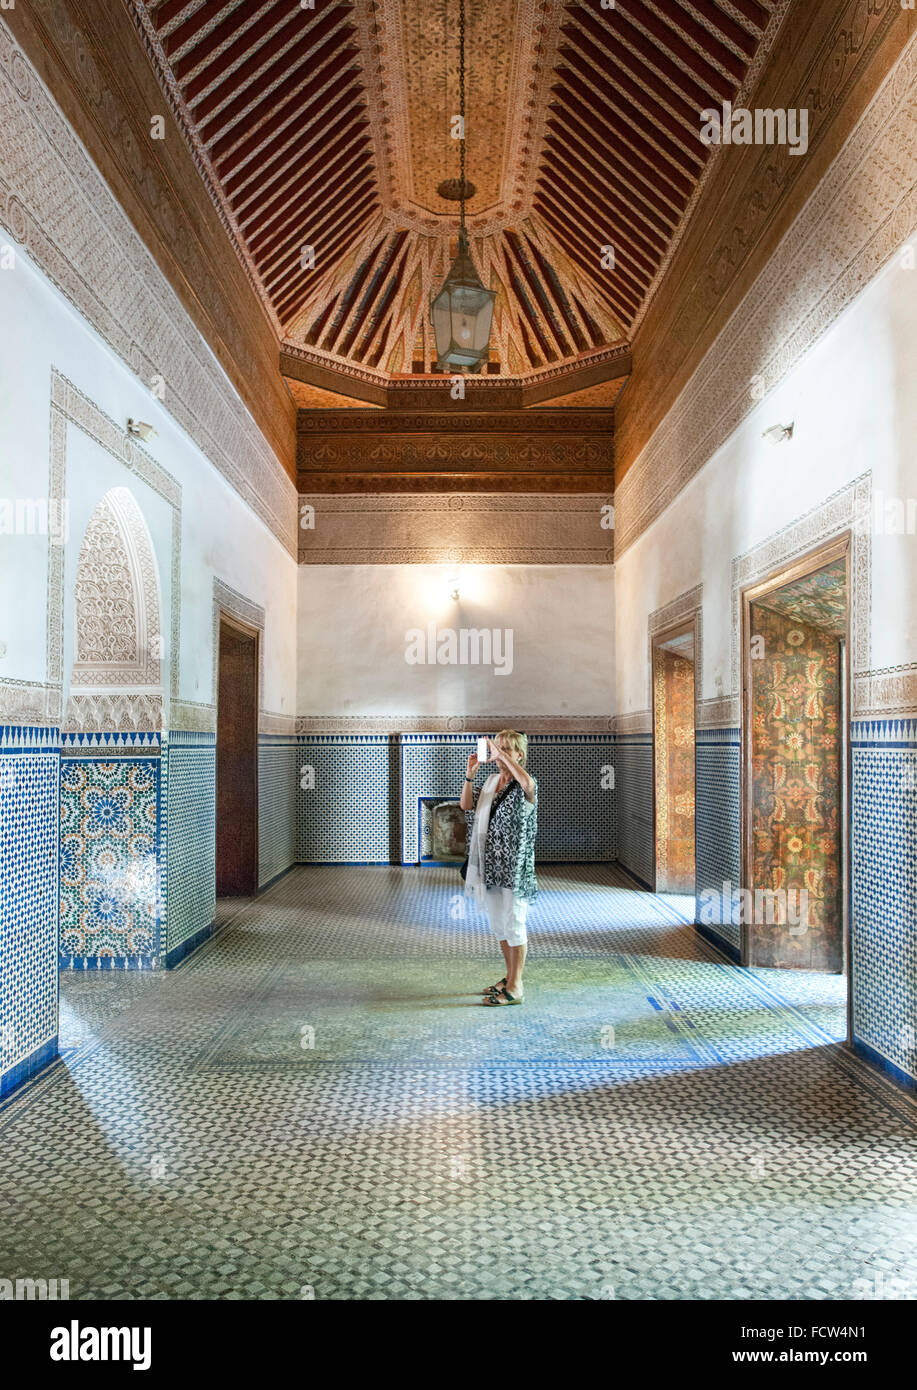 Interieur und Decke in einem der Zimmer des Bahia Palastes in Marrakesch, Marokko. Stockfoto